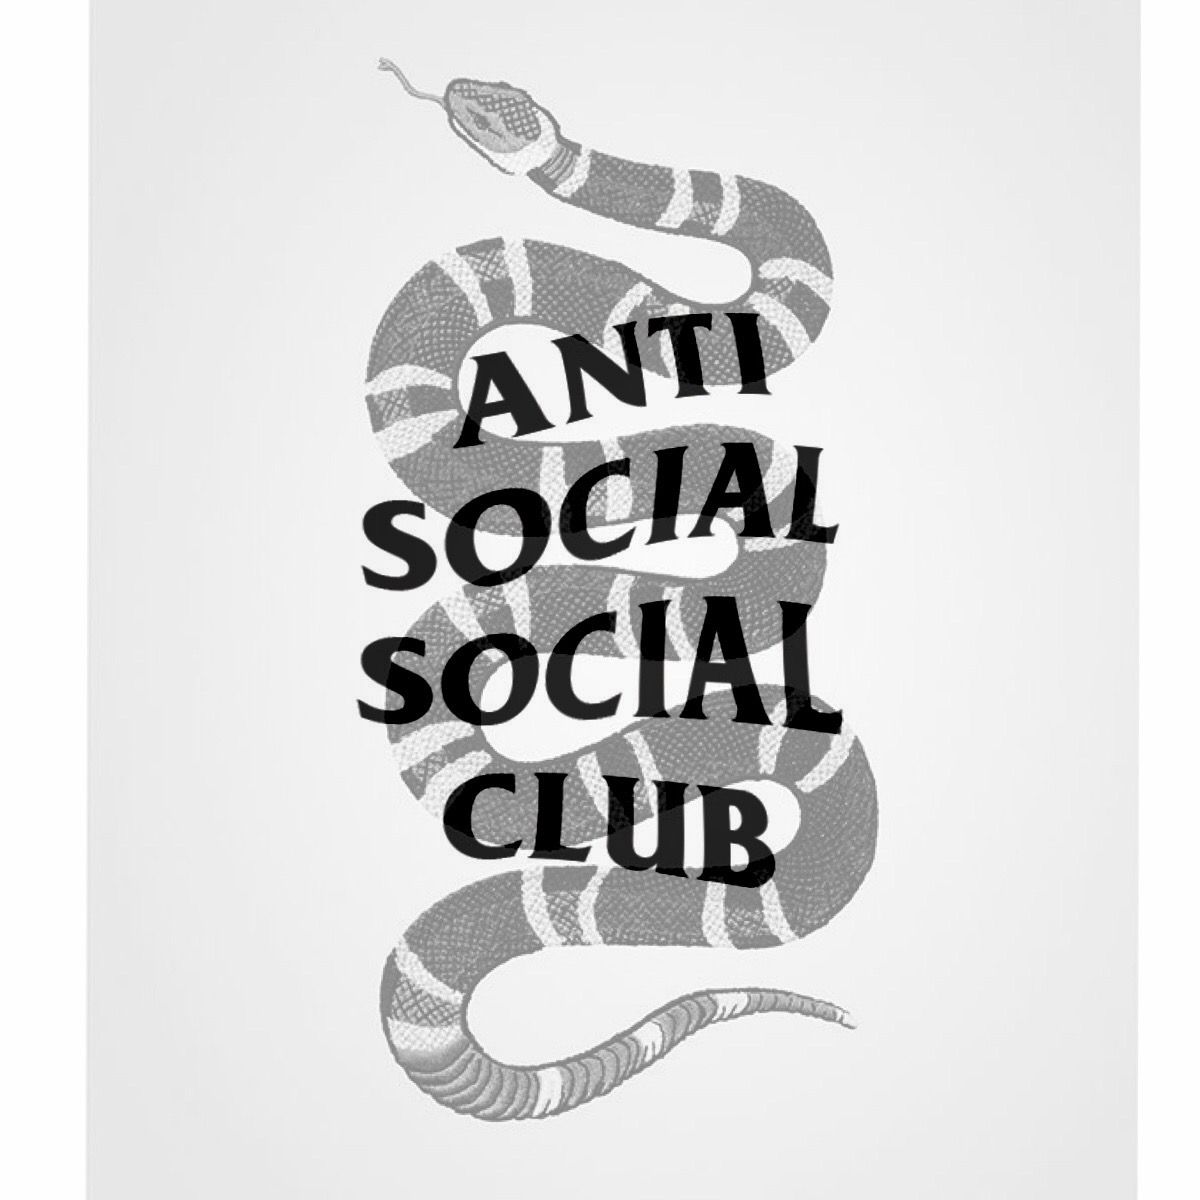 Anti social club logo - Anti Social Social Club